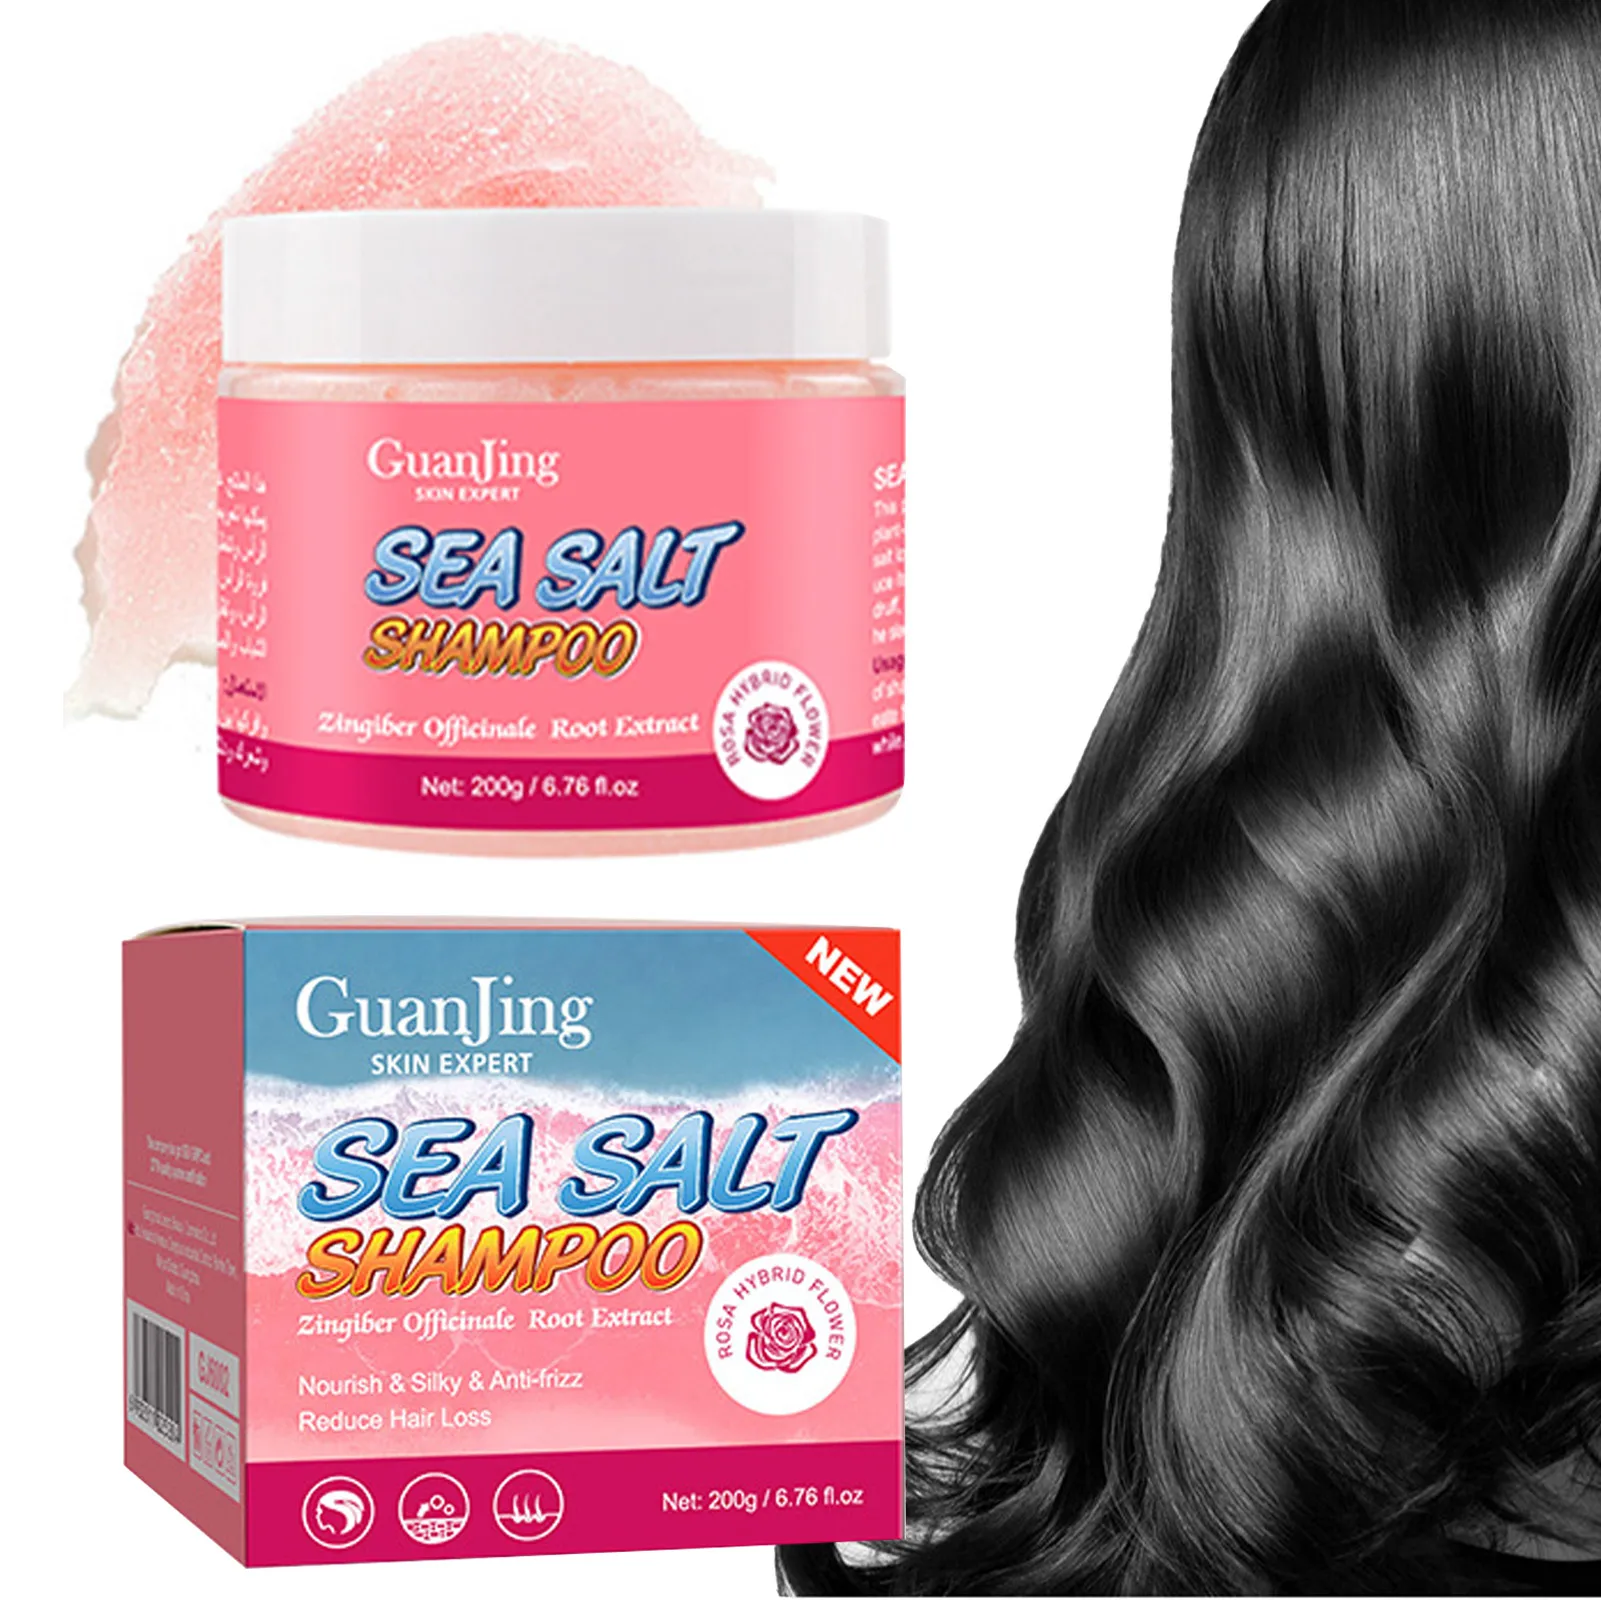 

Sea Salt Hair Shampoo Anti-Dandruff Scrub Shampoo Exfoliate Scalp Scrub Hair Care For Men Women Damaged And Oily Hair Types